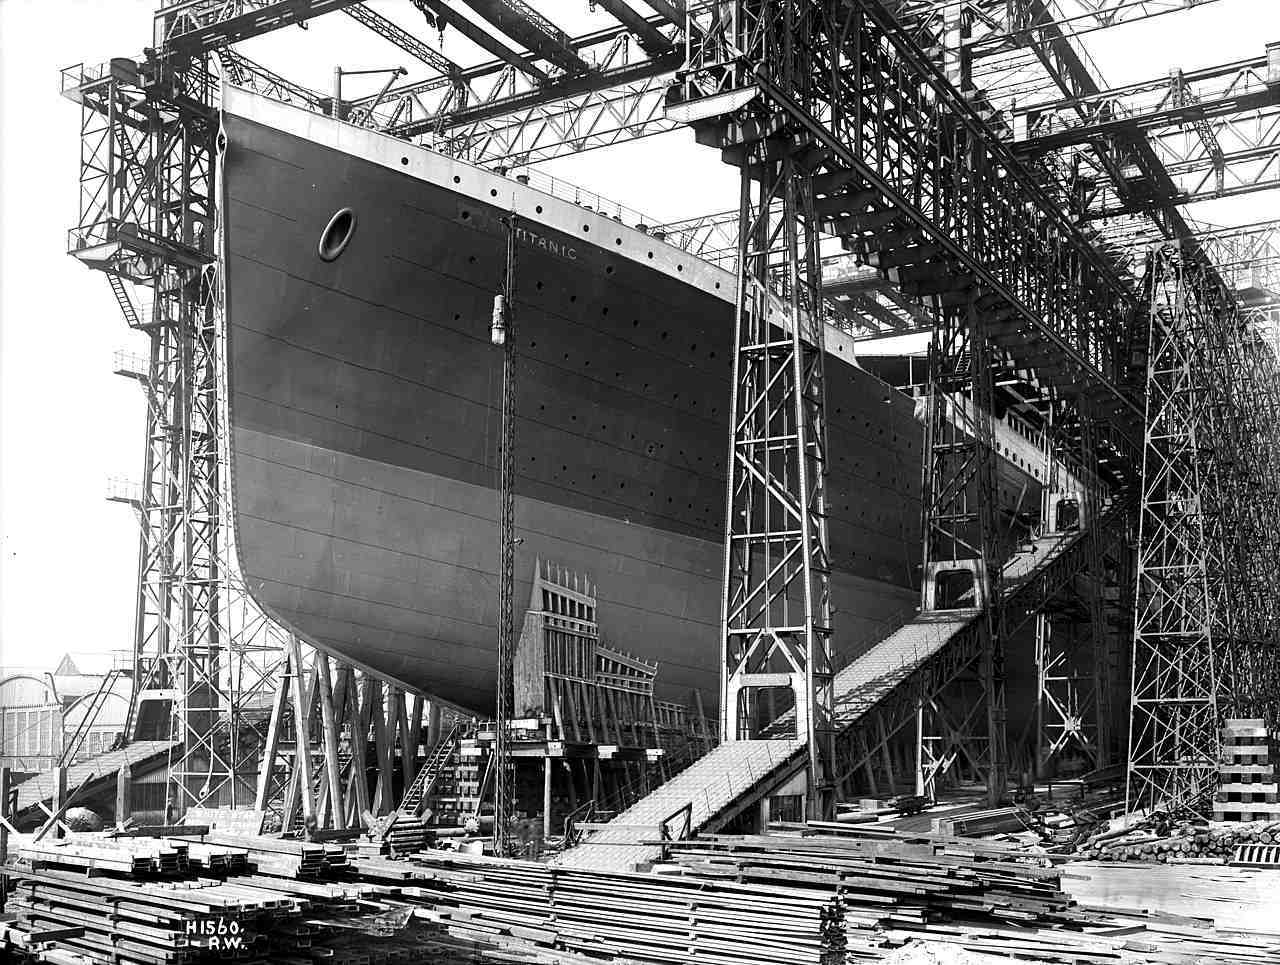 Déi donkel Geheimnisser an e puer wéineg bekannt Fakten hannert der Titanic Katastroph 2